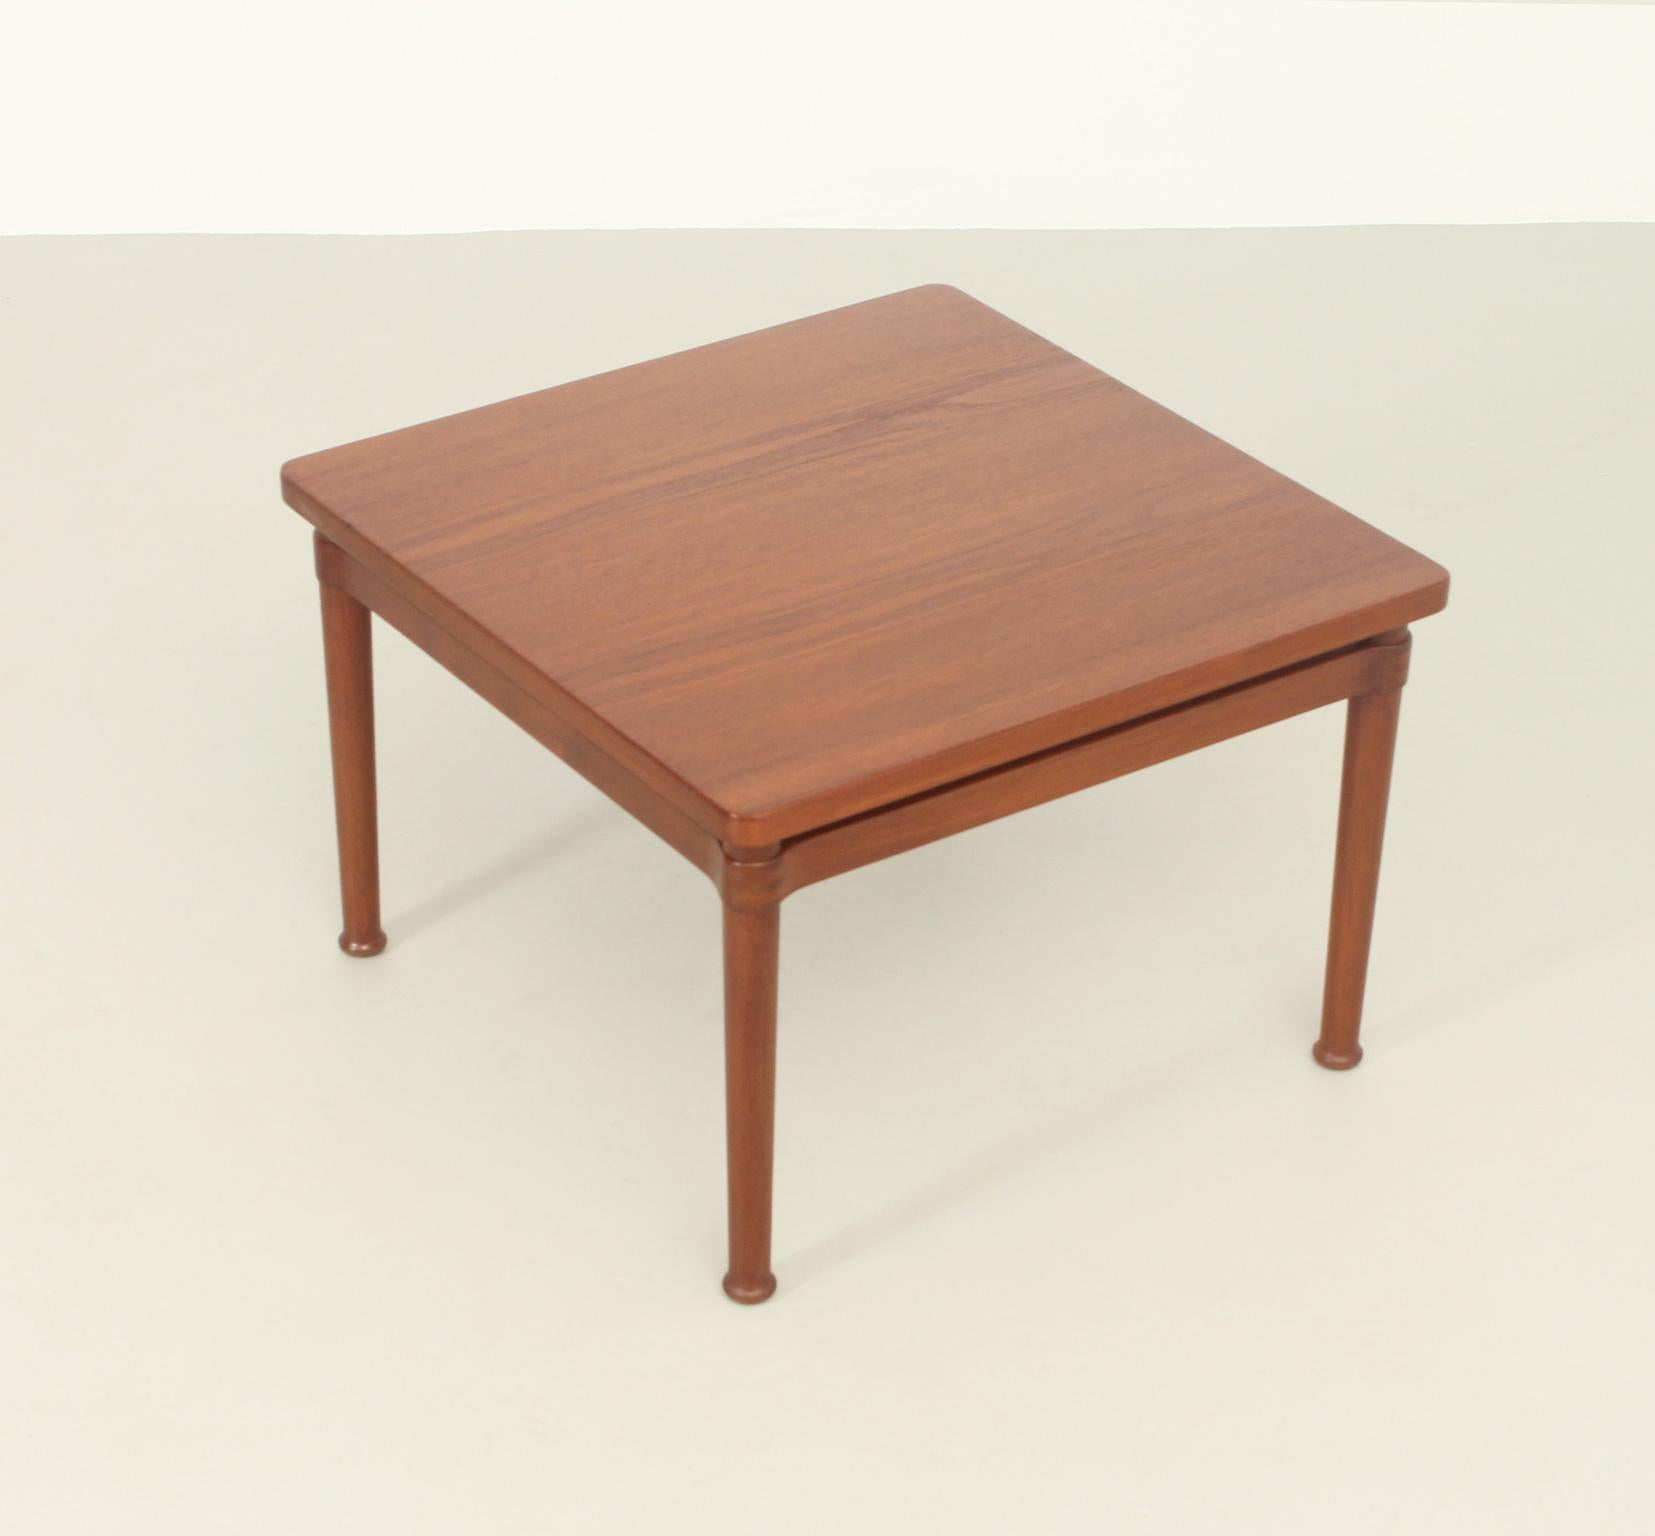 Scandinavian Modern Side Table in Teak Wood by Kai Lyngfeldt Larsen for Søborg, 1950's For Sale